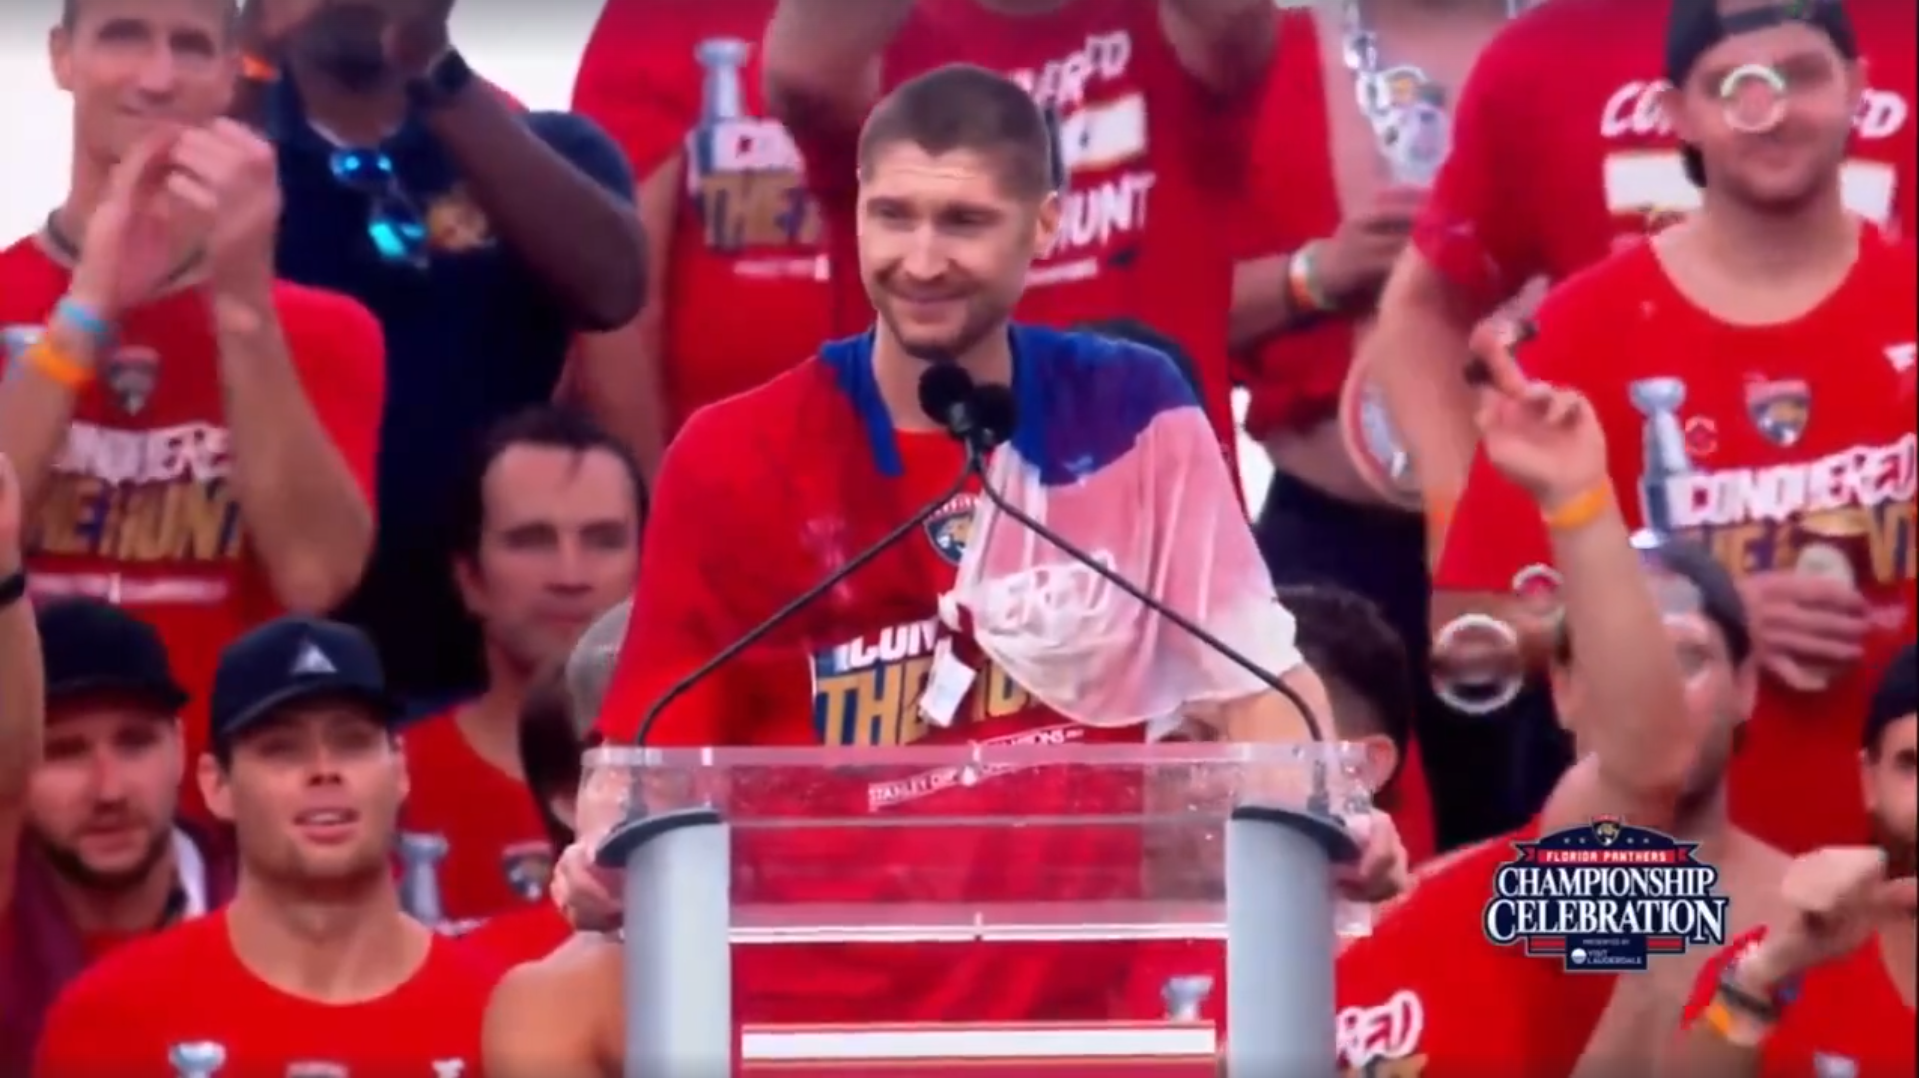 Бобровский произнёс речь на чемпионском параде «Флориды» с флагом России